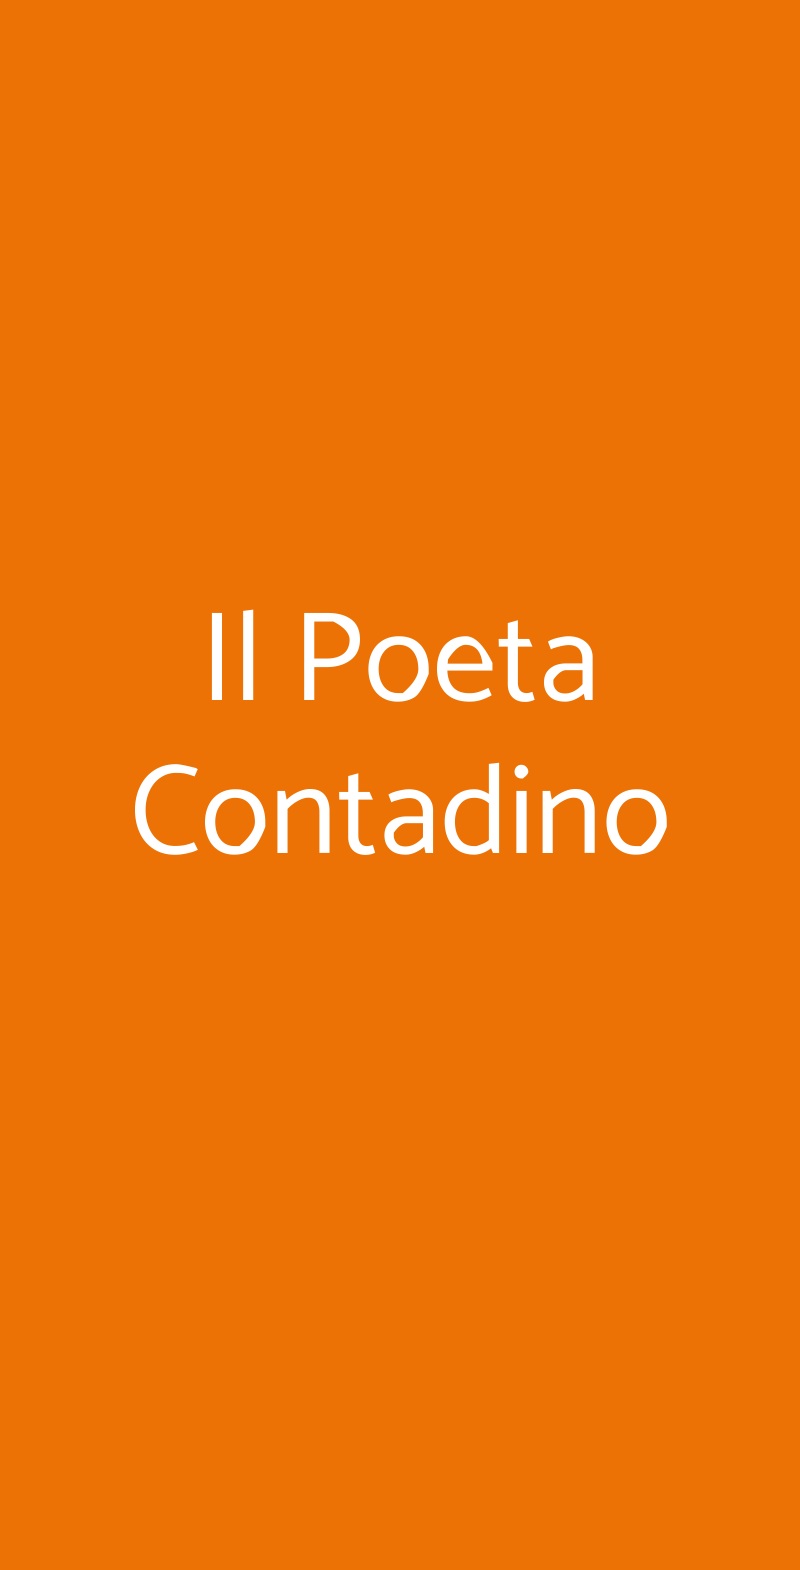 Il Poeta Contadino Alberobello menù 1 pagina